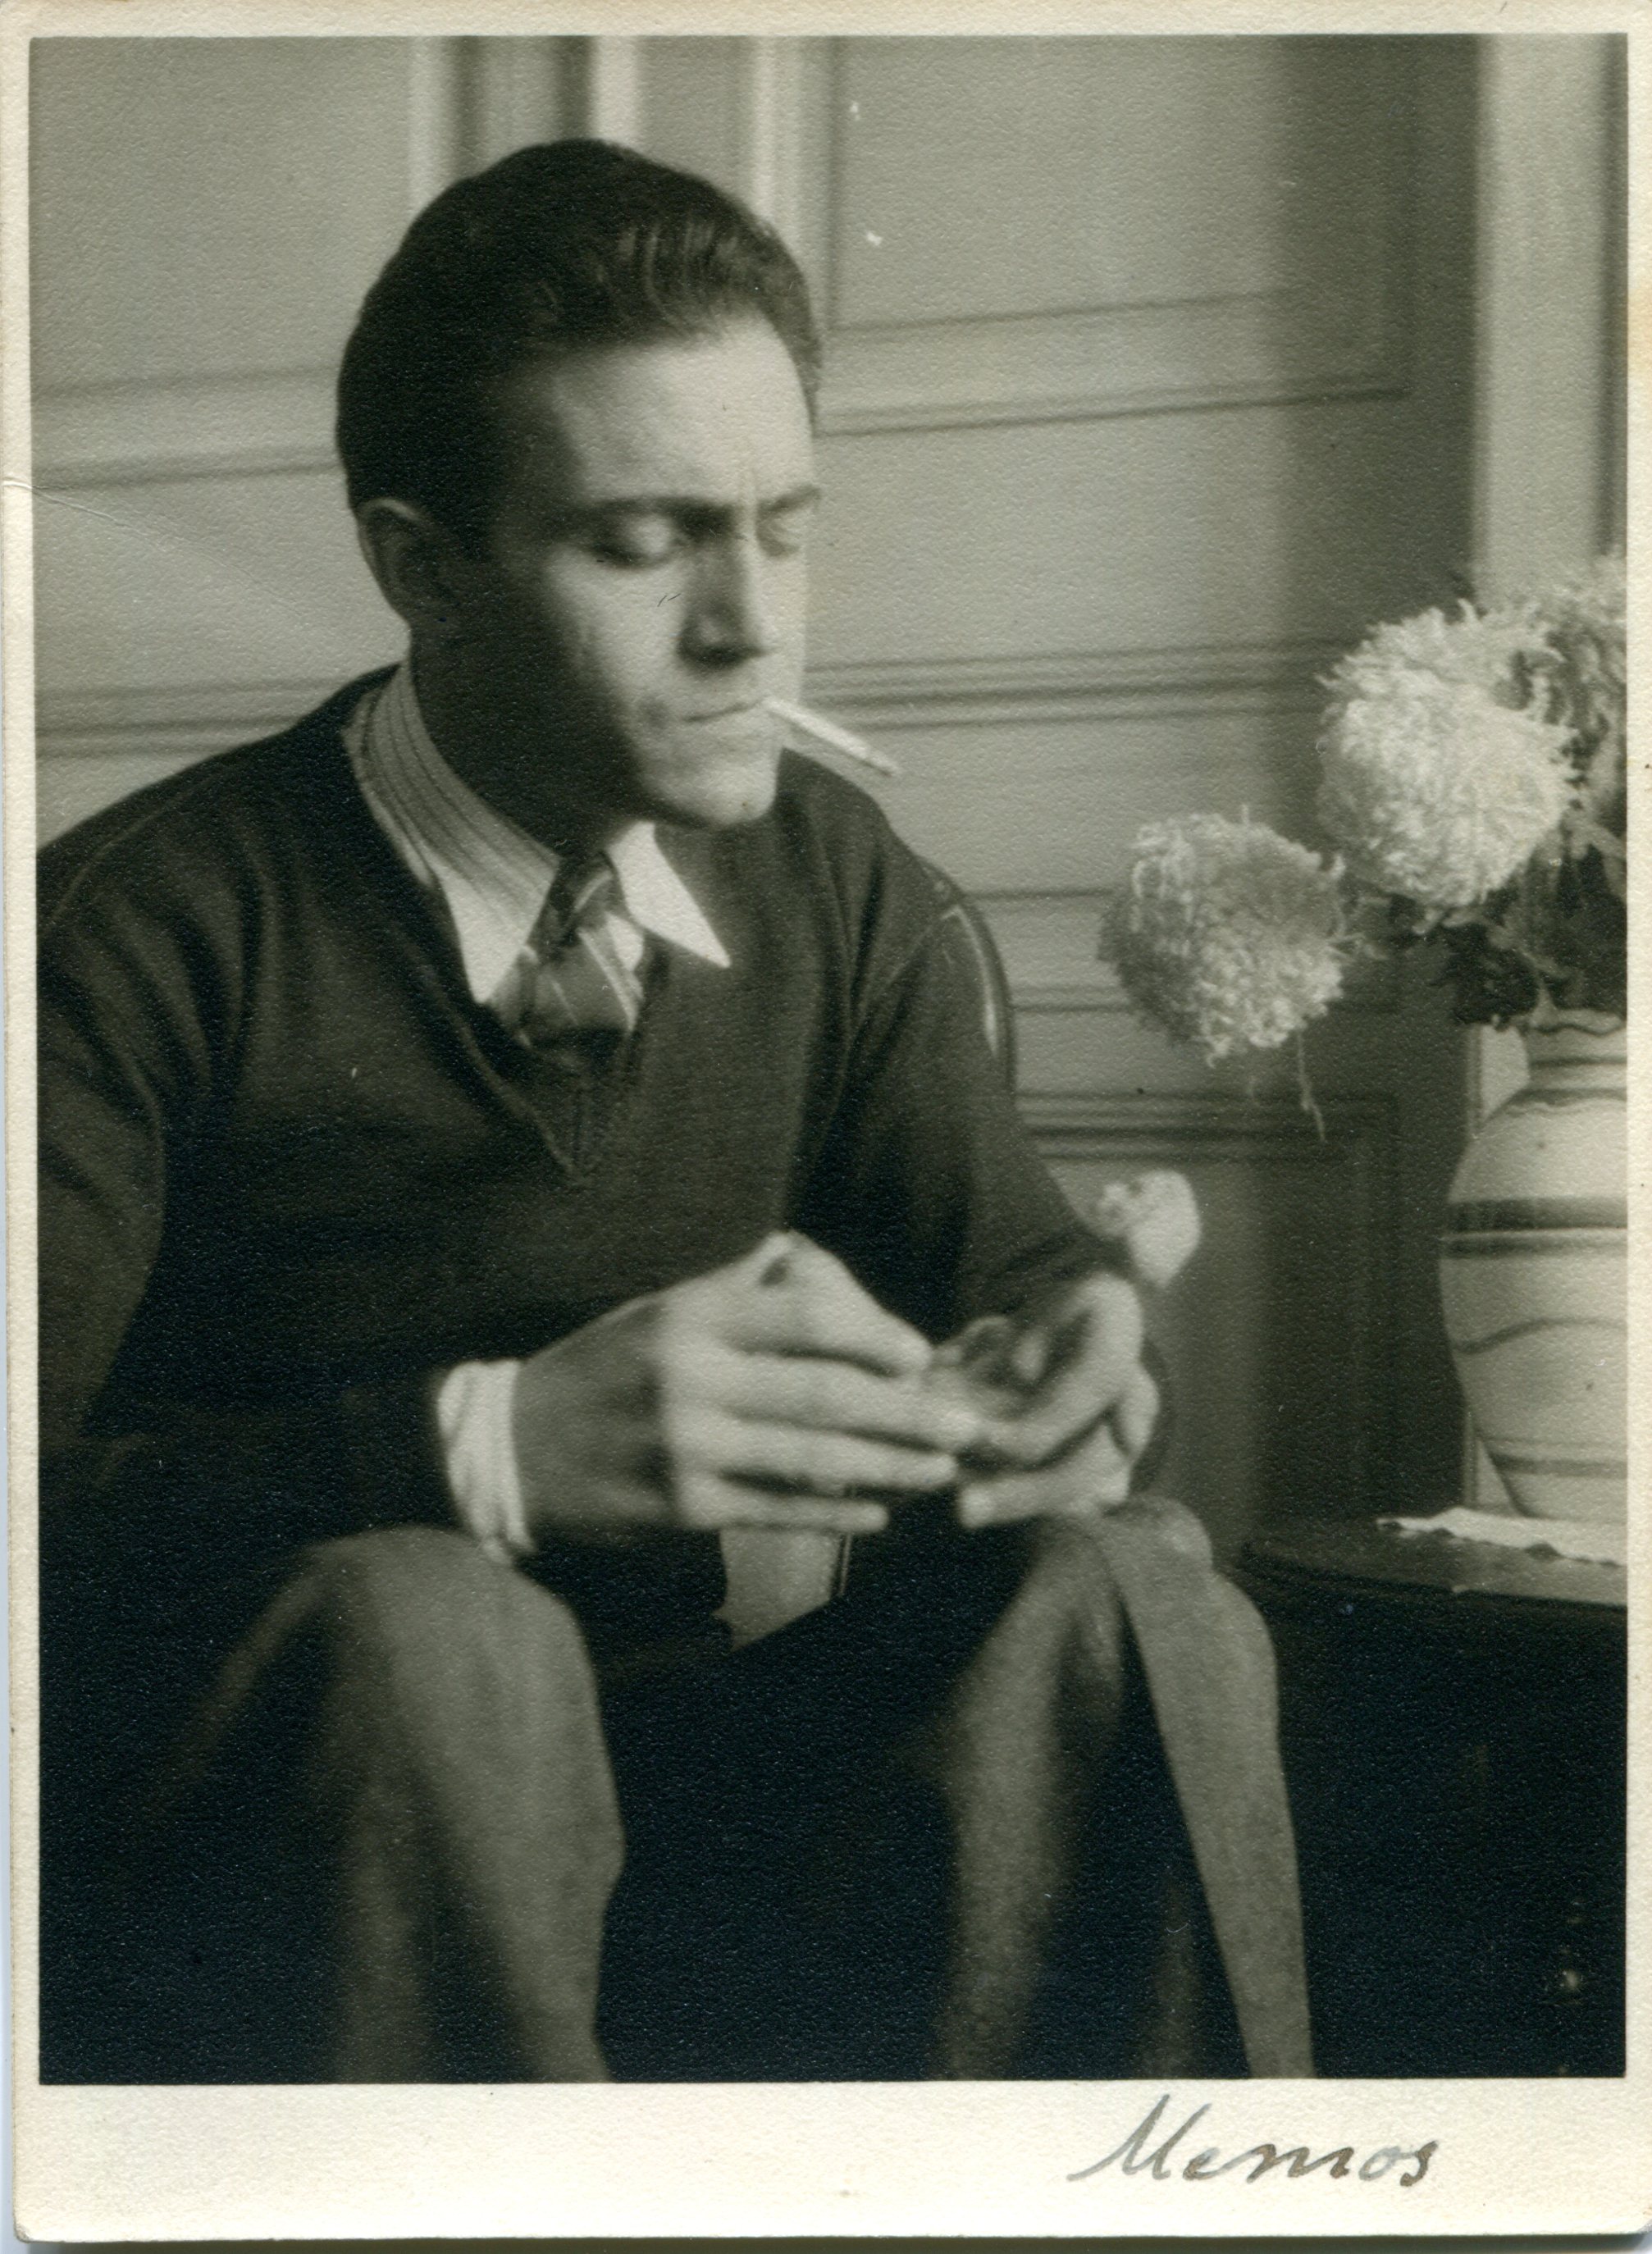 Ο Μέμος Μακρής λίγο πριν φύγει για το Παρίσι, 1945